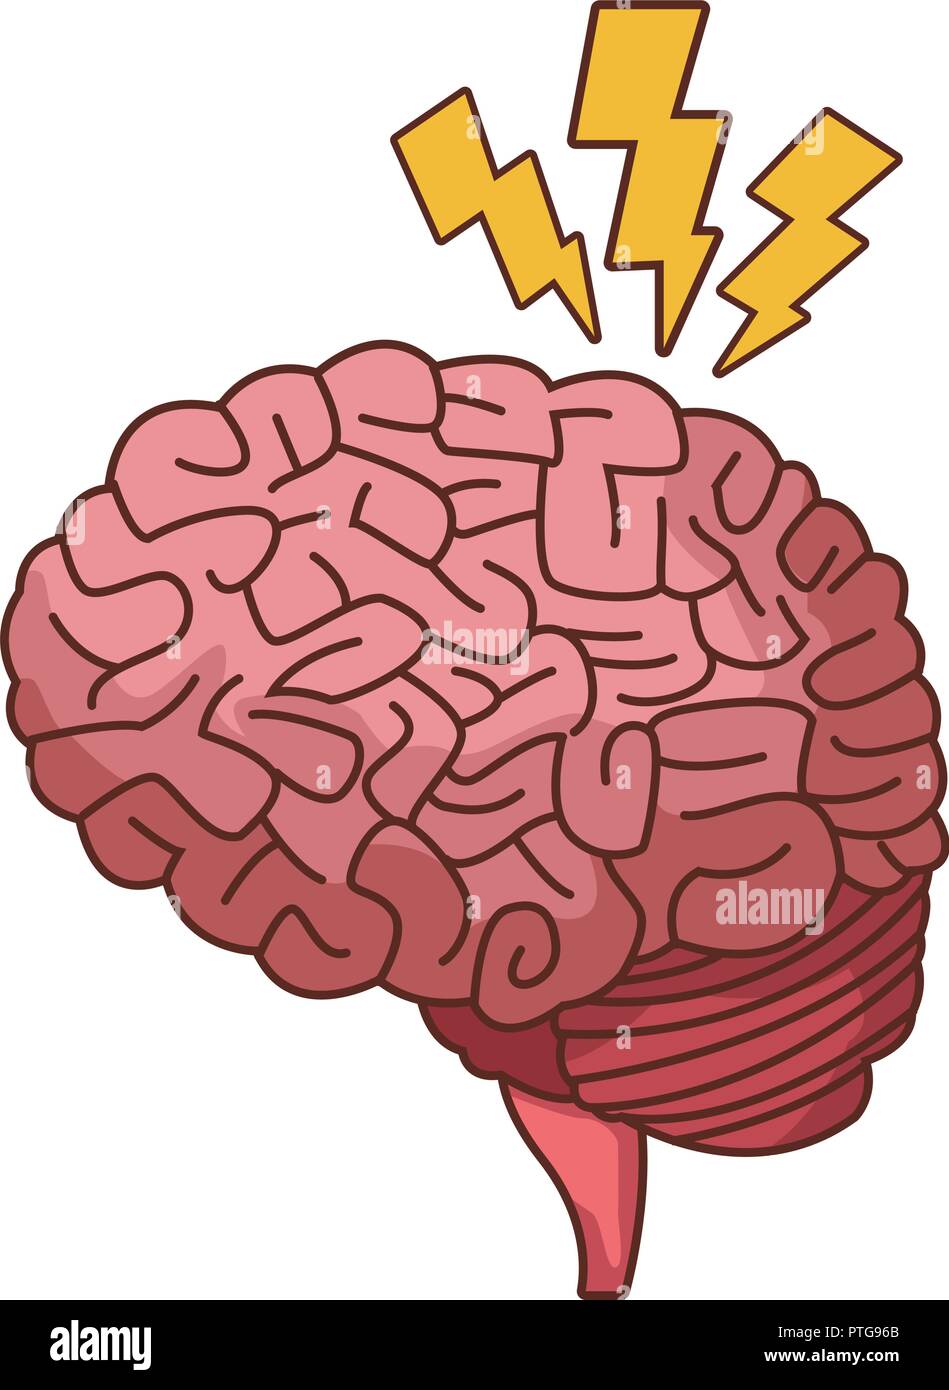 Alzheimer brain symbol Stock Vector